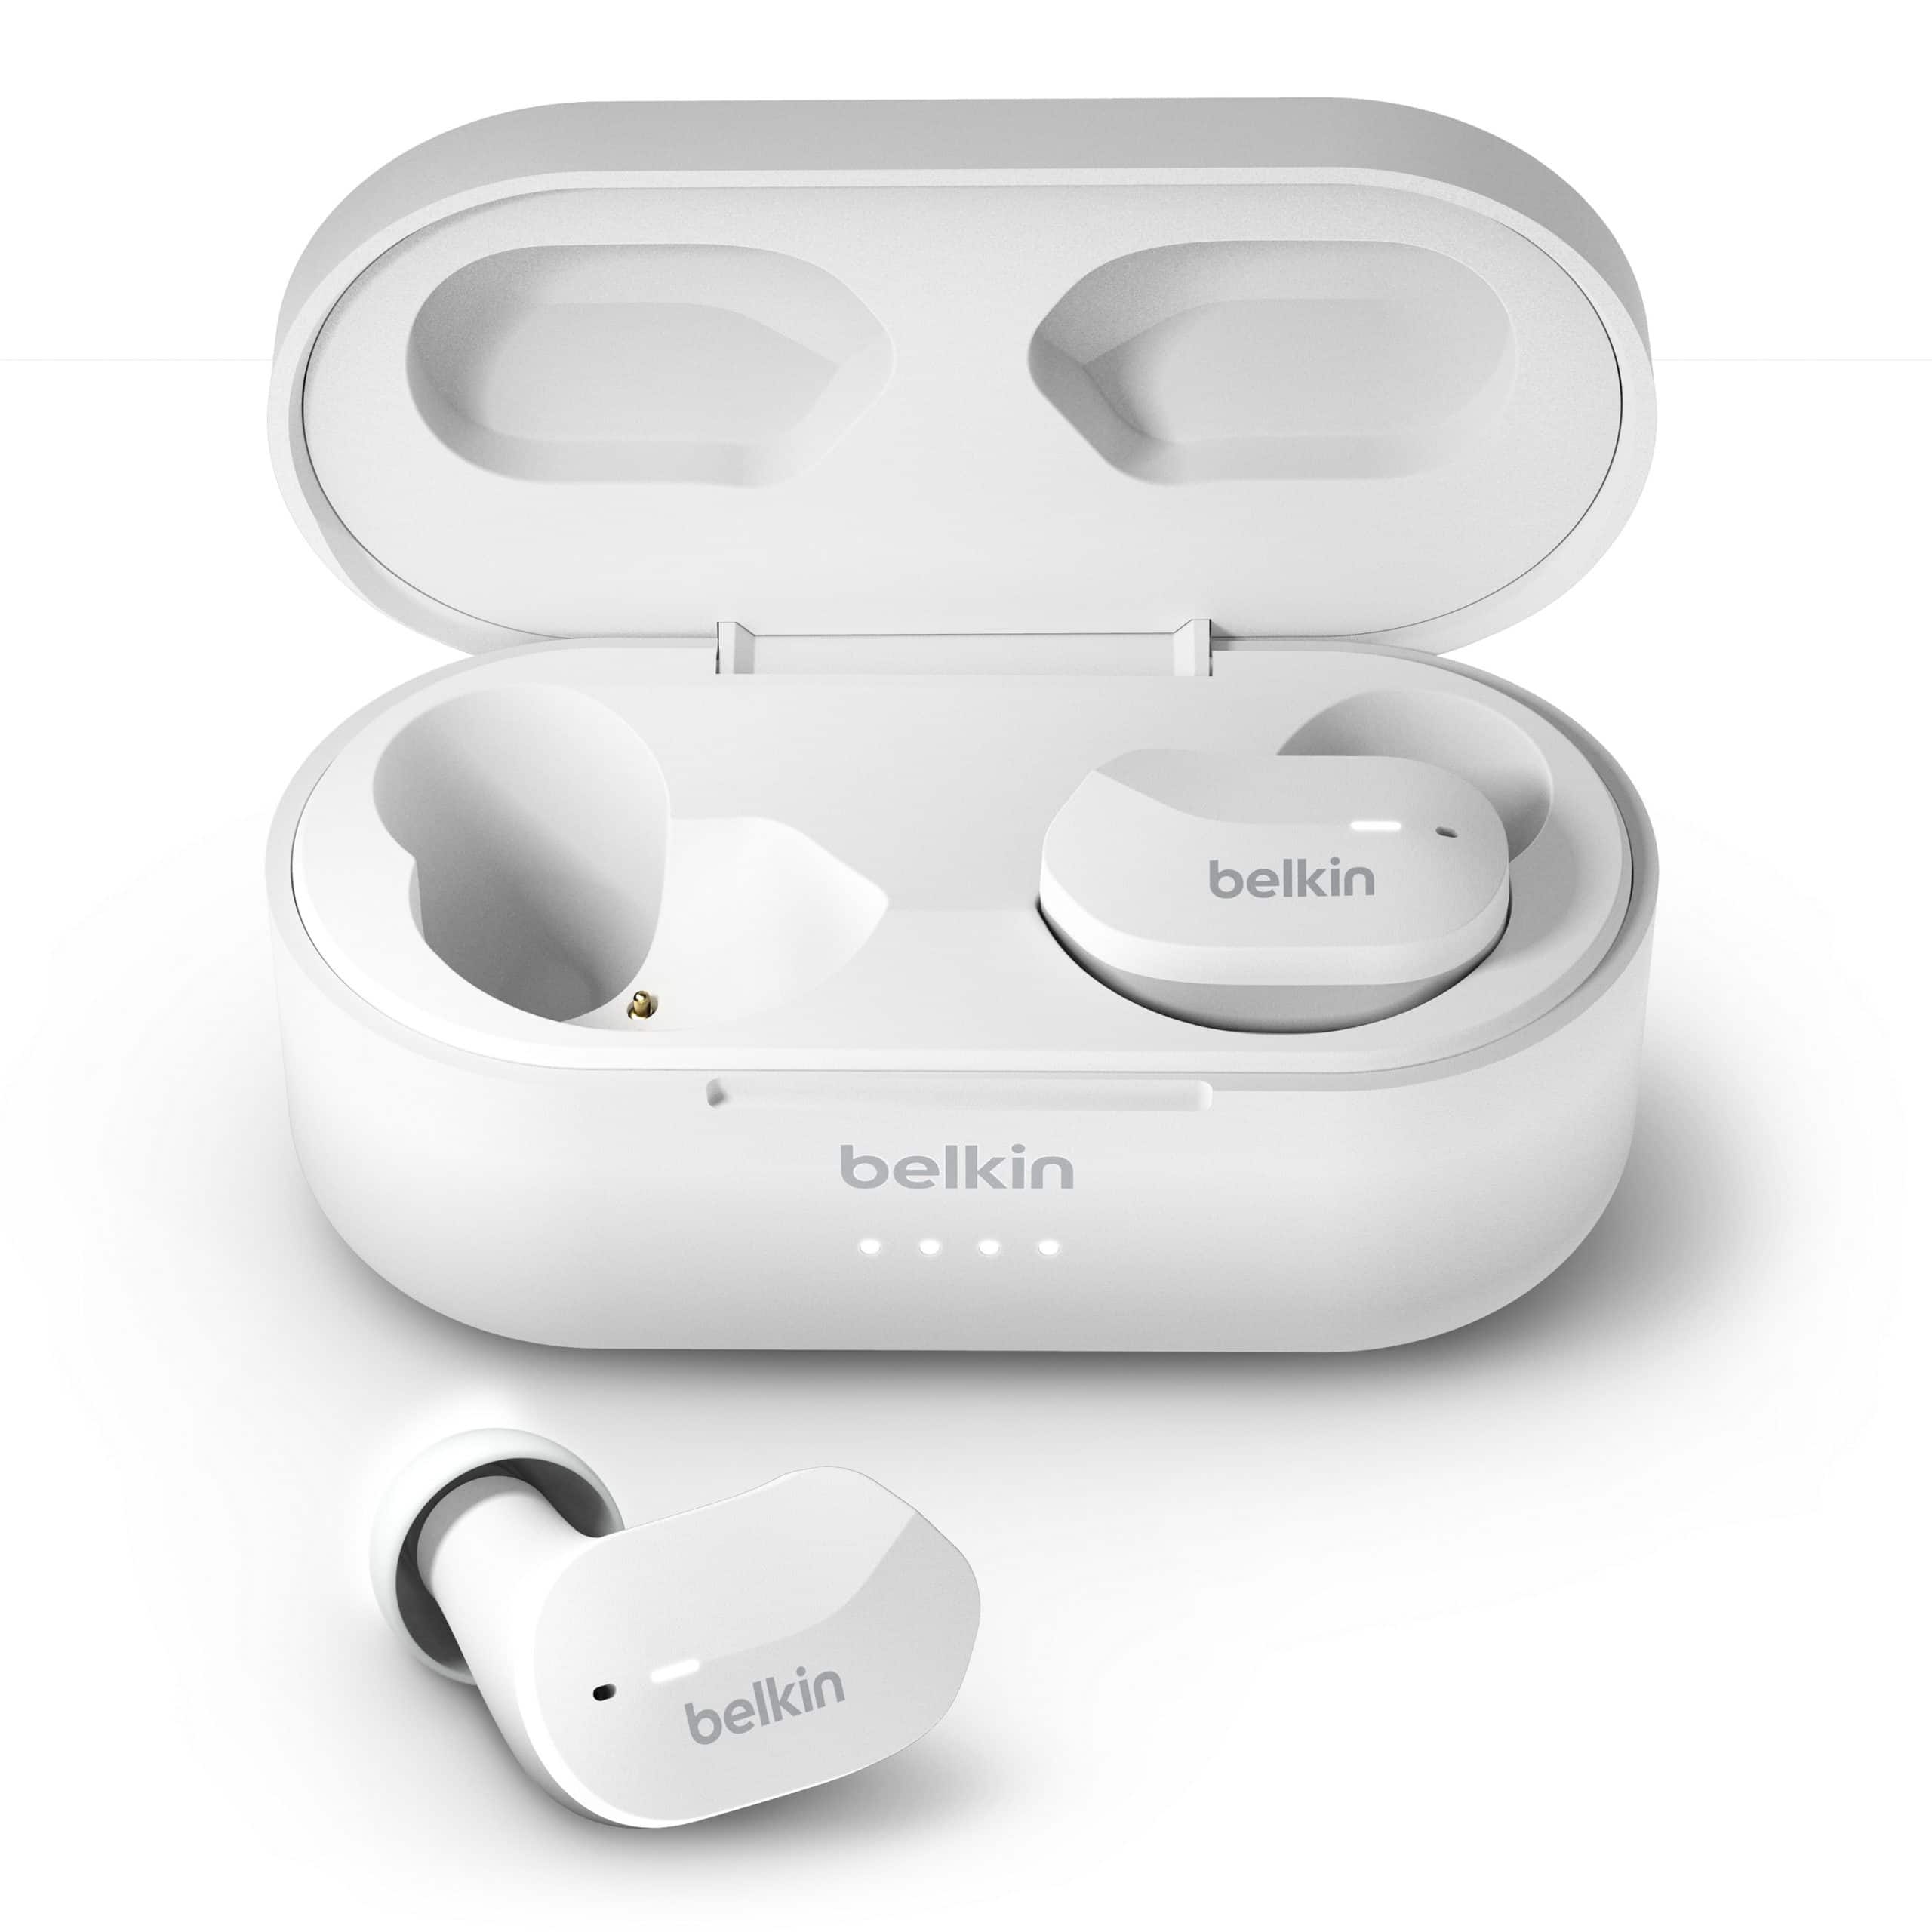 Belkin debuts the new Soundform True Wireless earbuds in the UAE